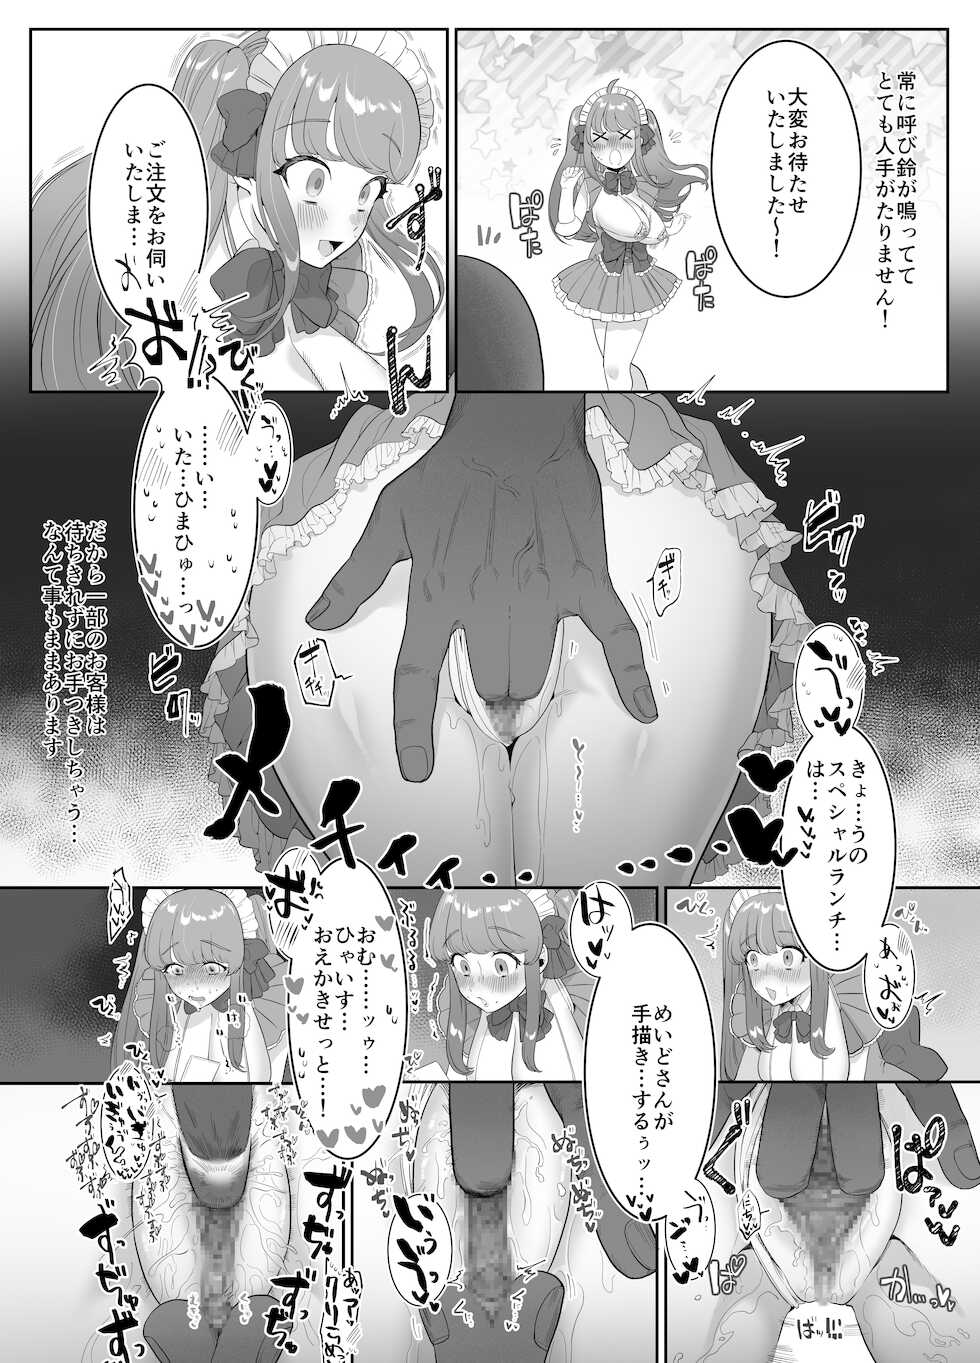 [Ushiro no shimu (Asaomi Shimura)] Maid Café Chichi Yura Cheki 1-mai 1500-en 1-maime - Page 9